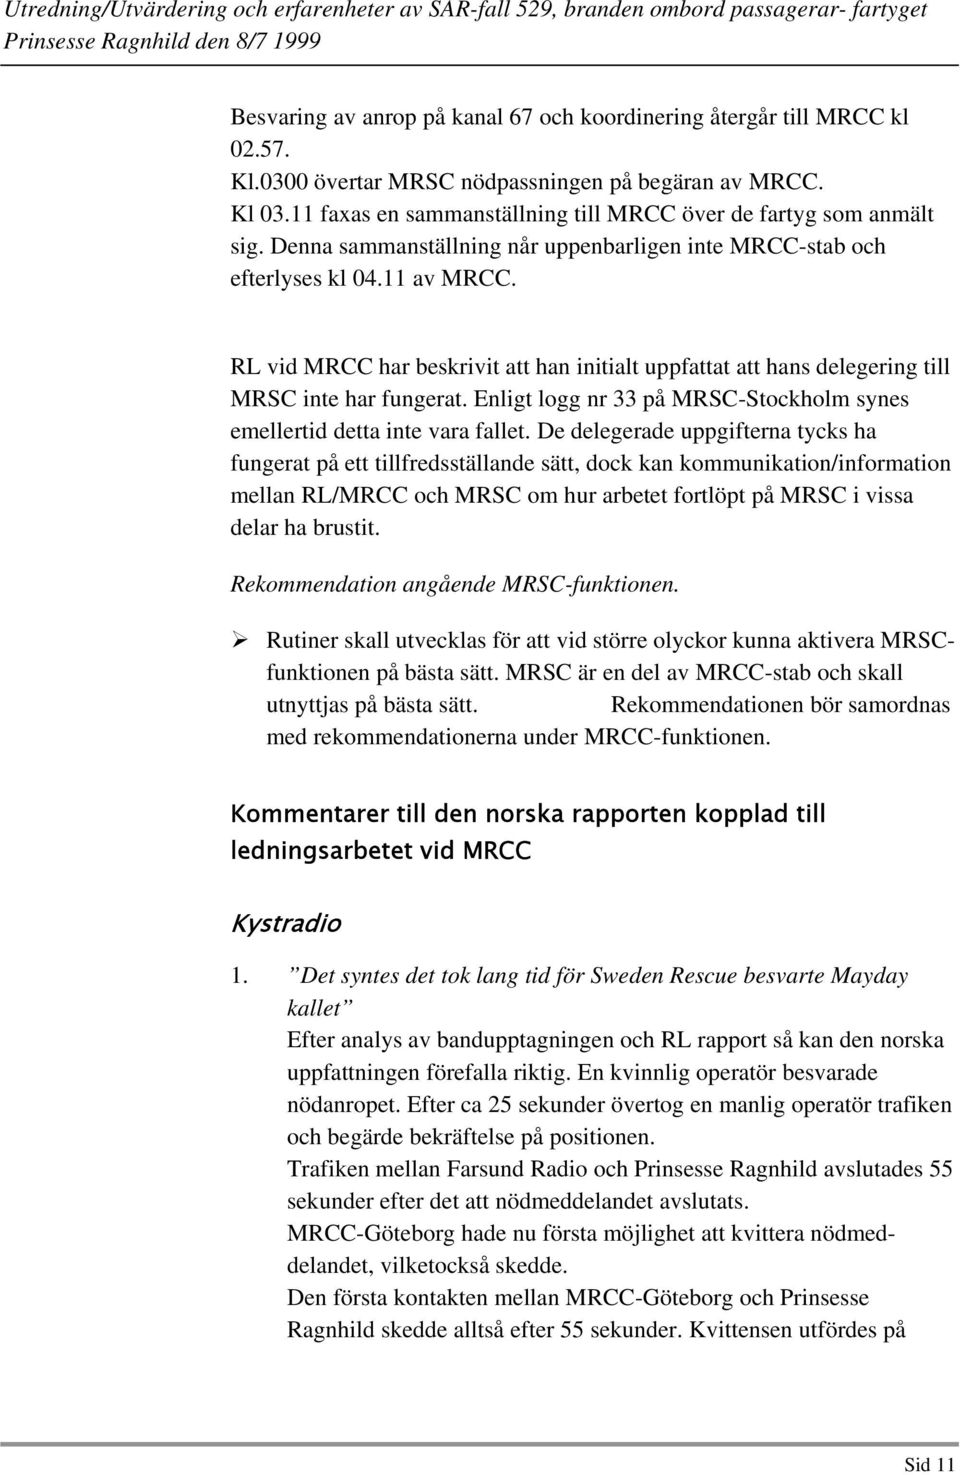 RL vid MRCC har beskrivit att han initialt uppfattat att hans delegering till MRSC inte har fungerat. Enligt logg nr 33 på MRSC-Stockholm synes emellertid detta inte vara fallet.